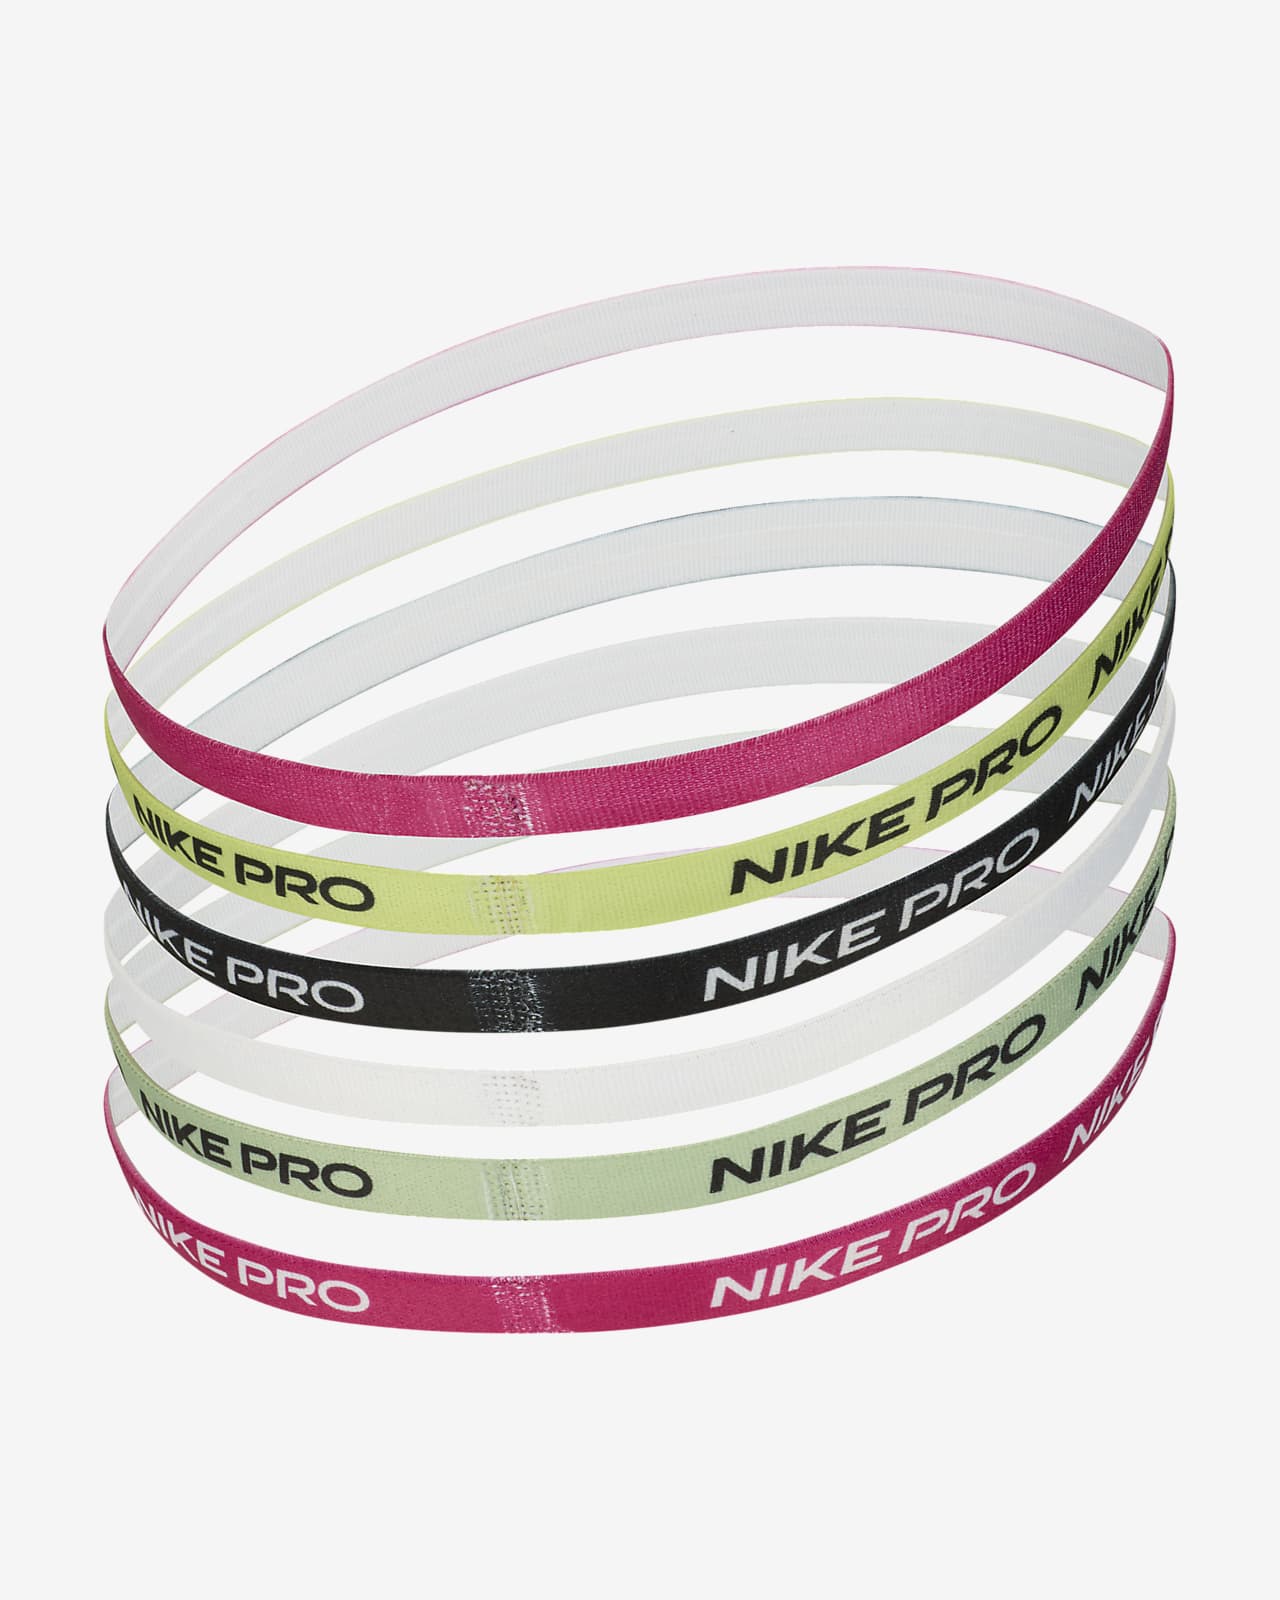 Pack 6 cintas de pelo Nike varios colores